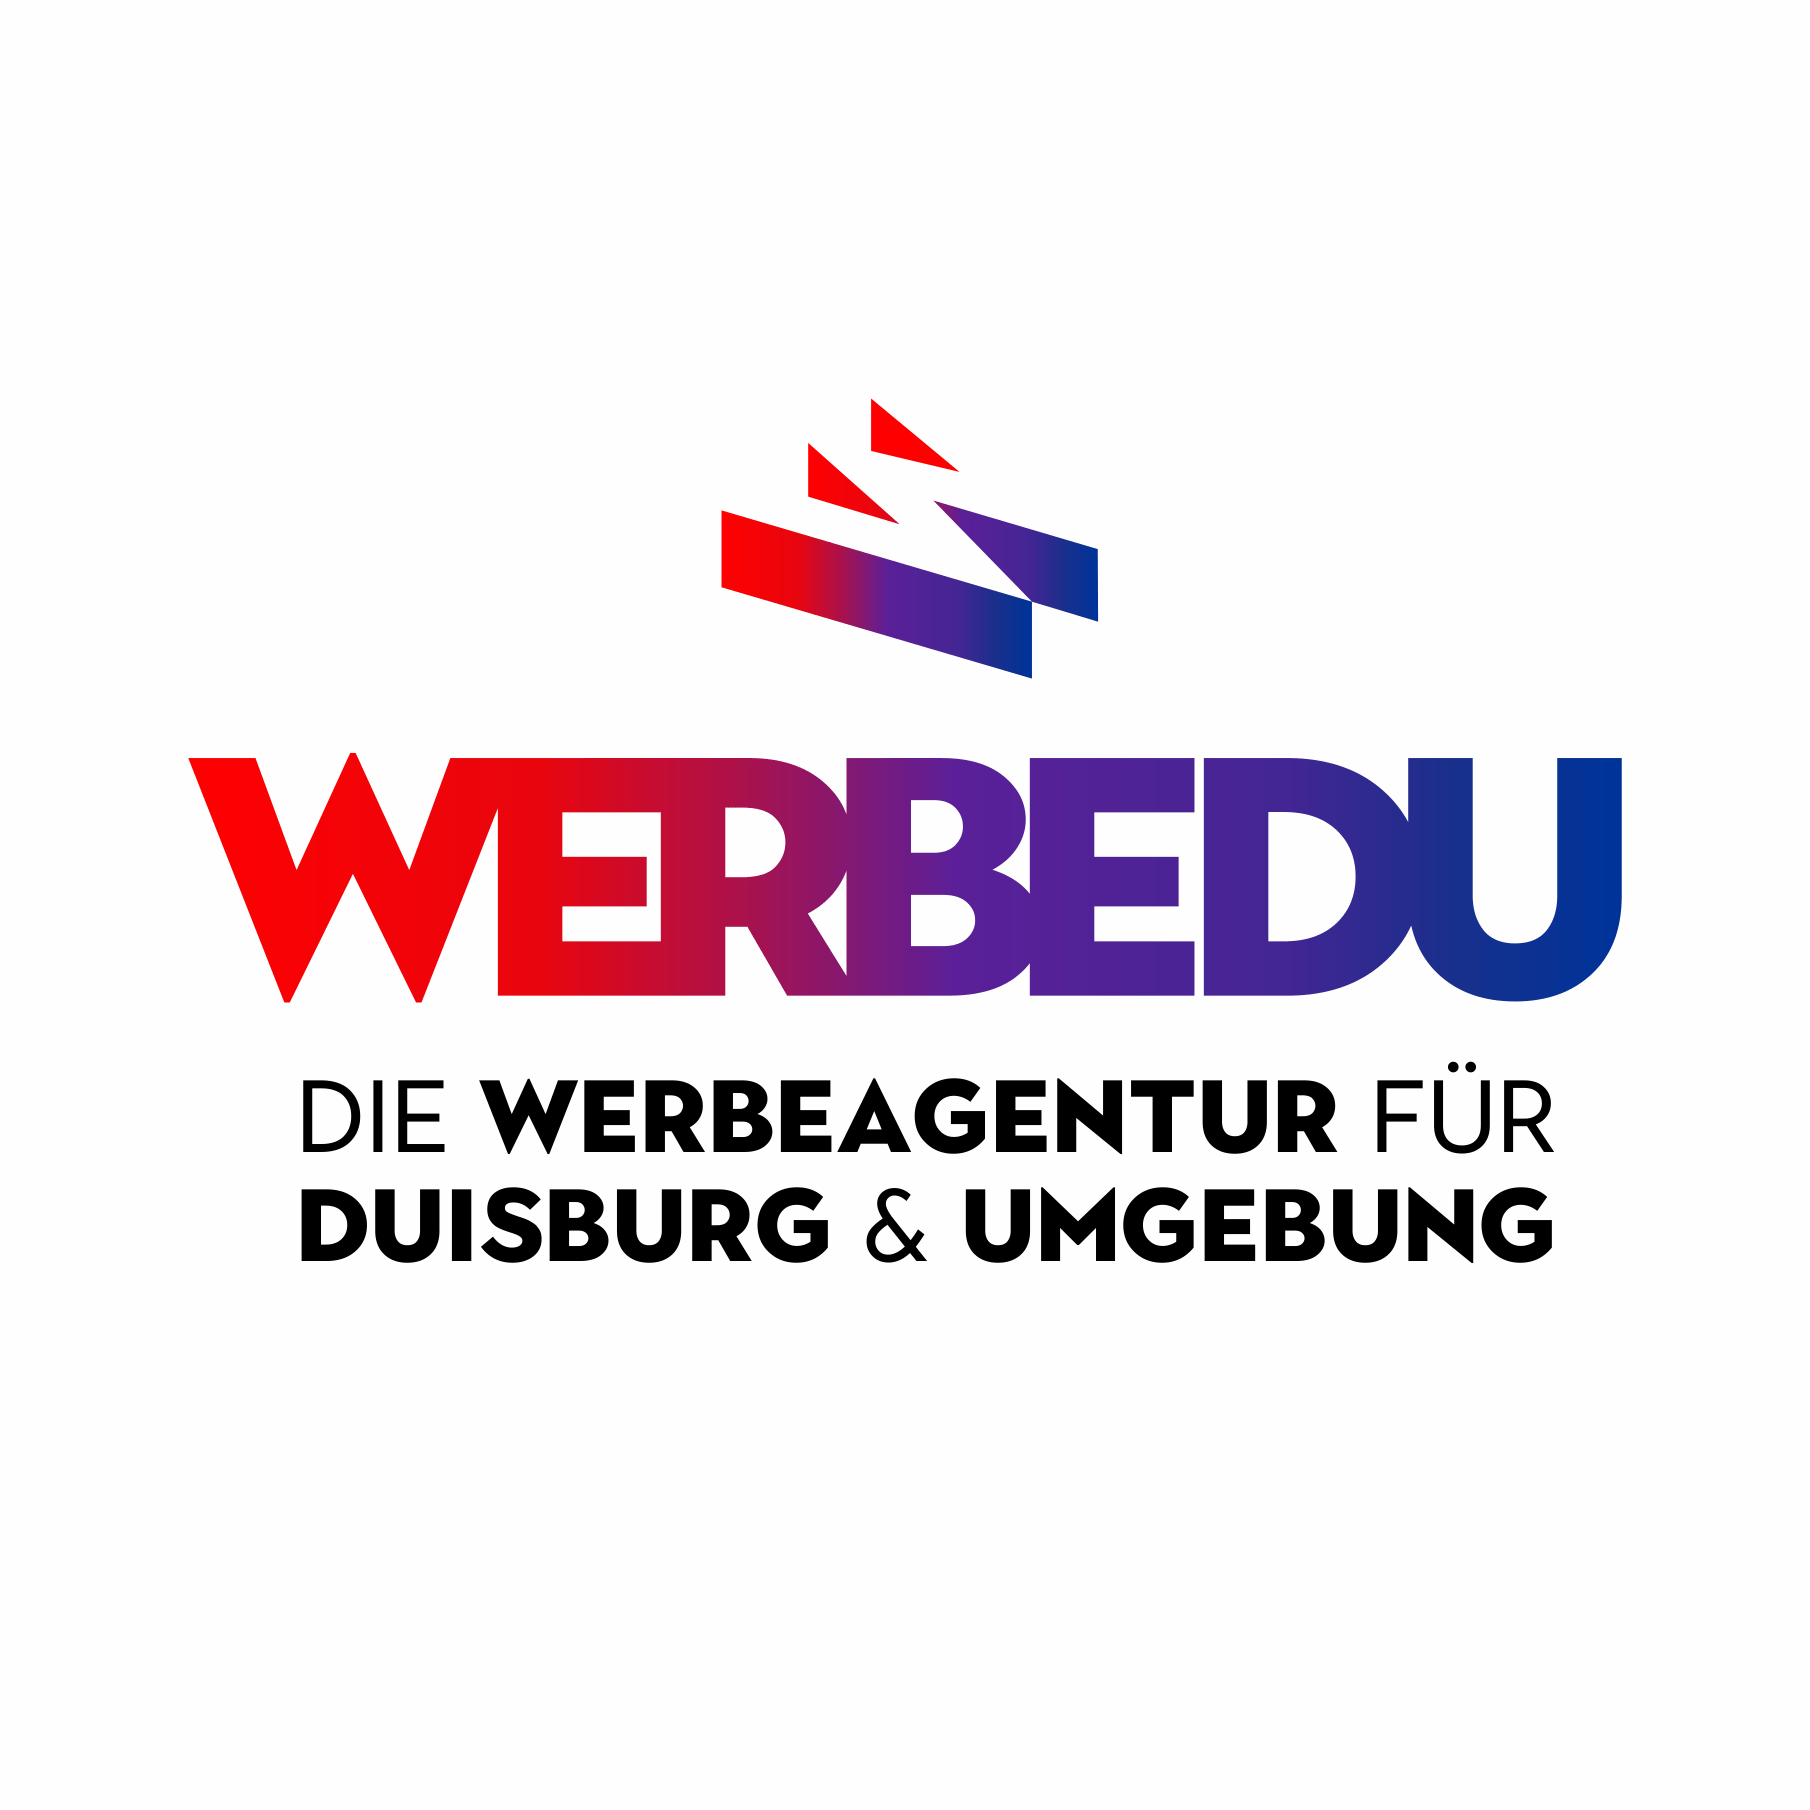 (c) Werbedu.de